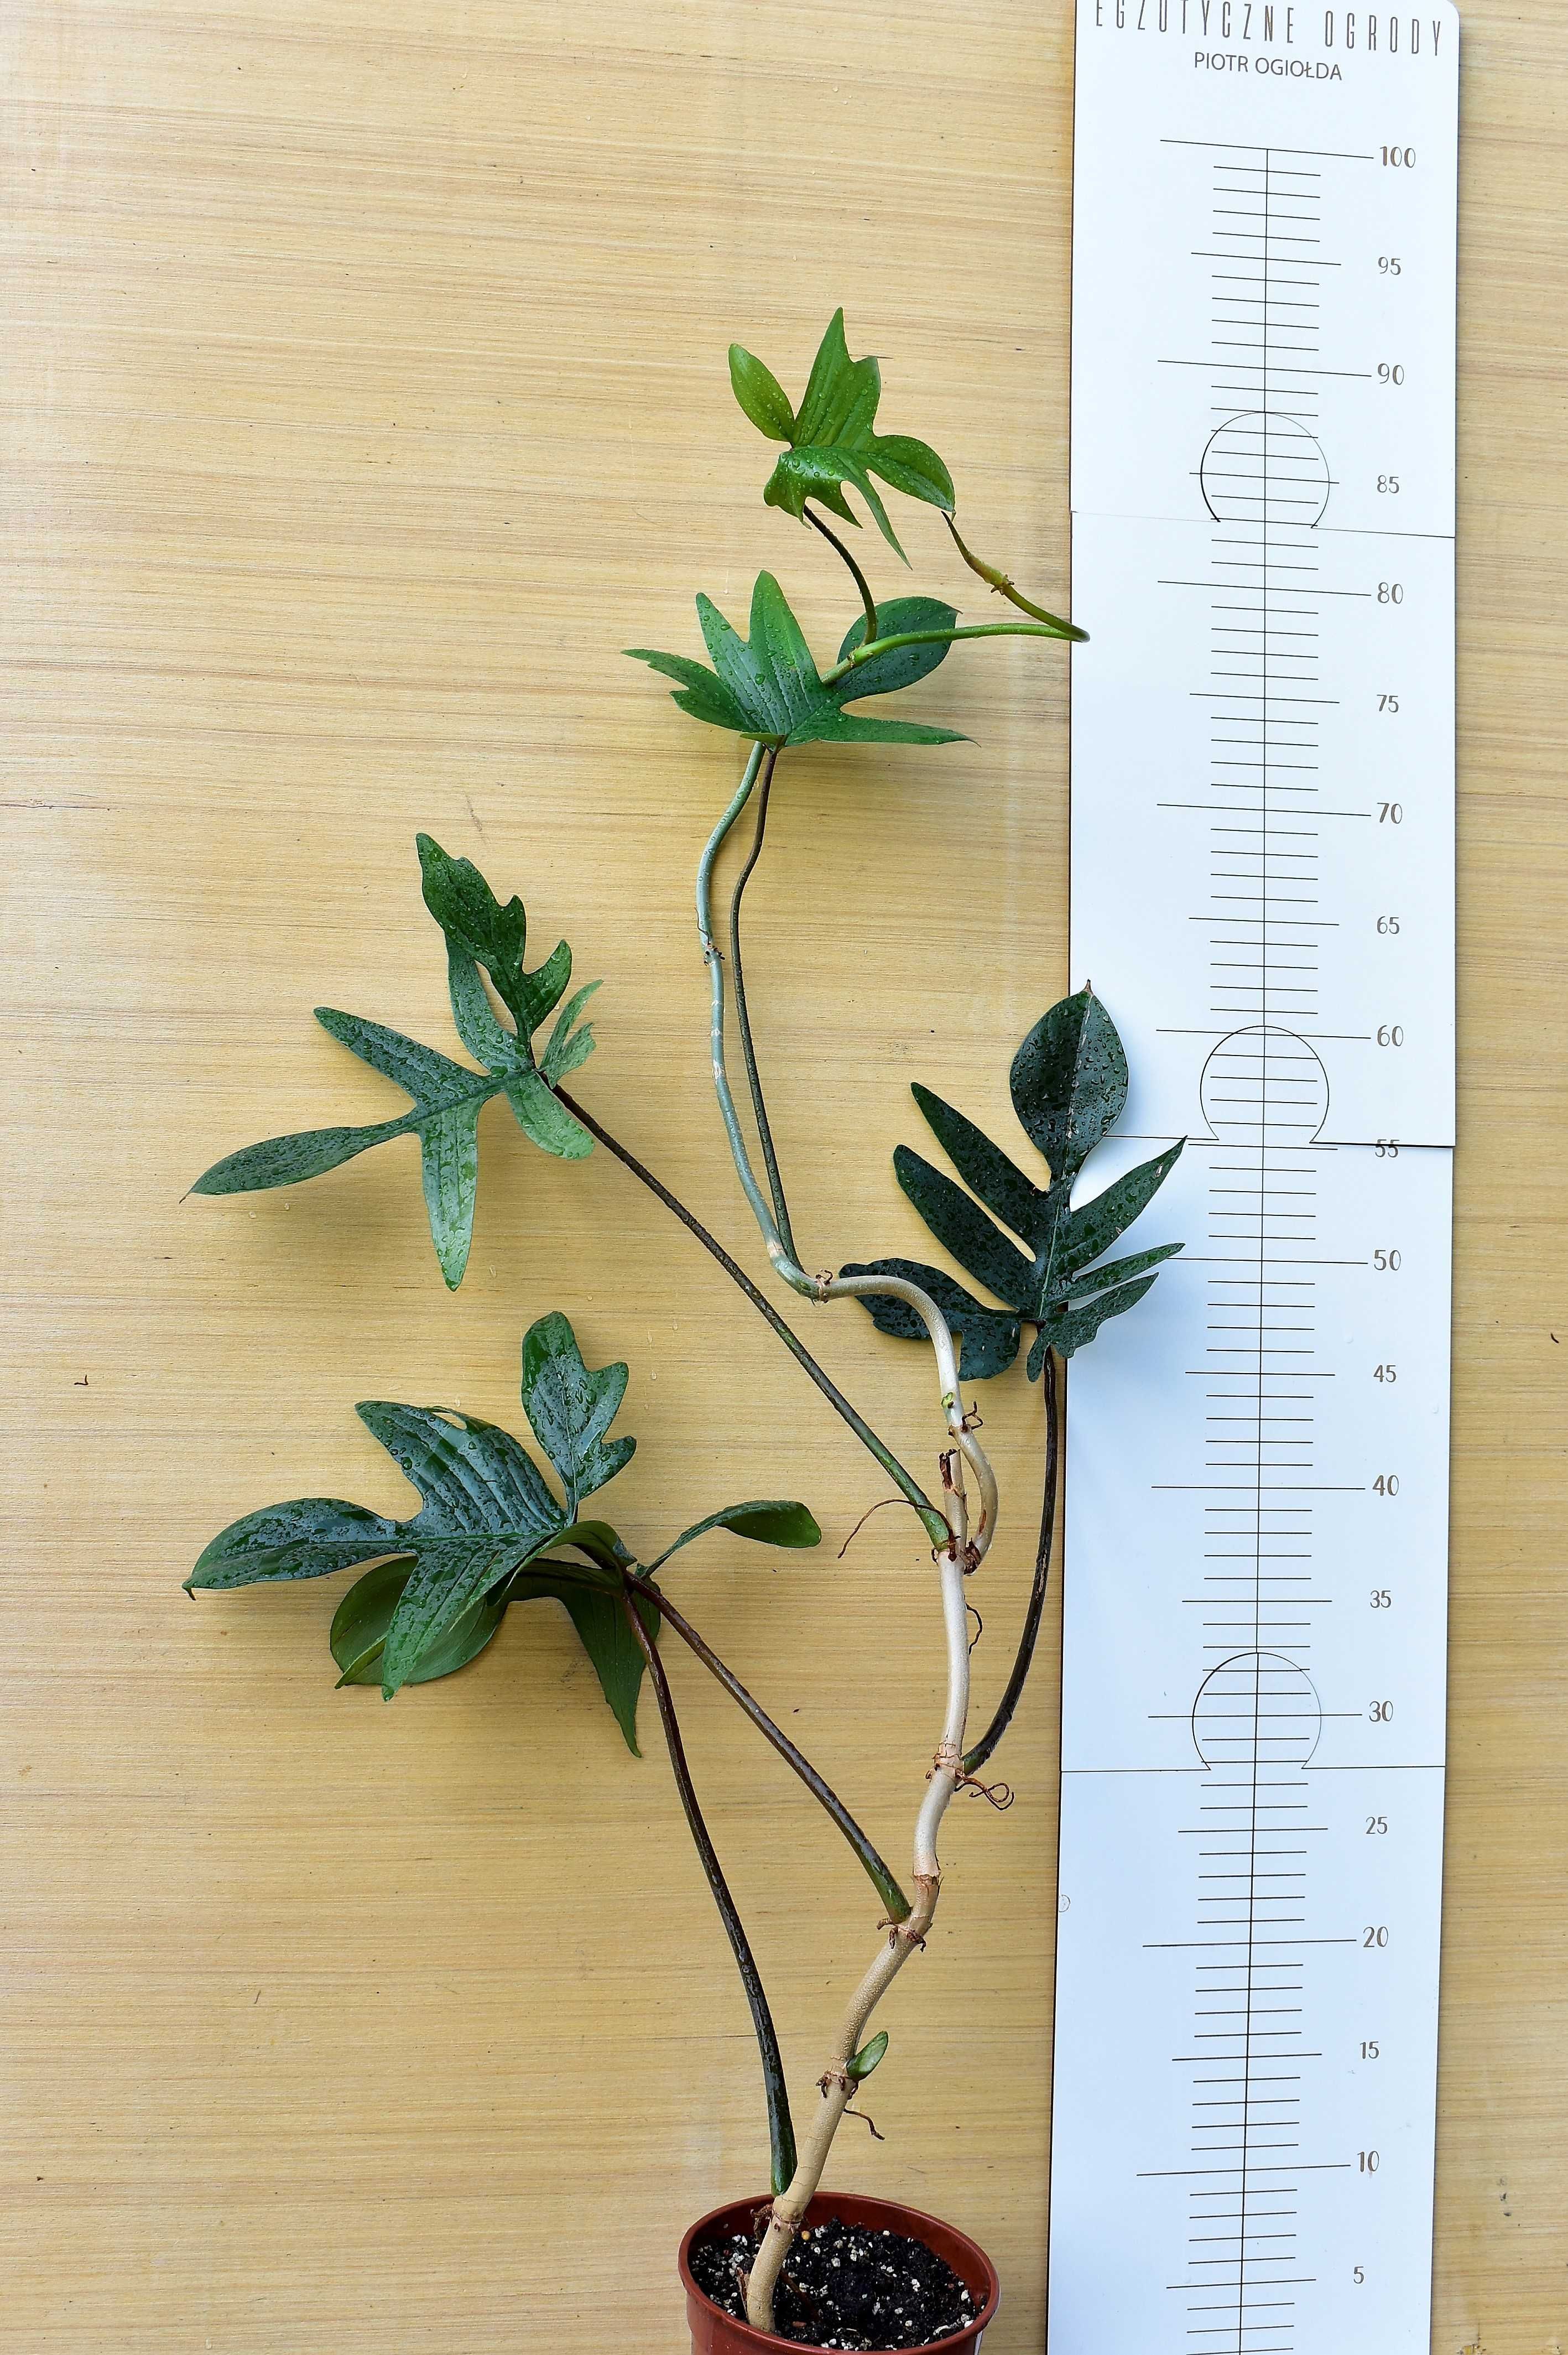 Philodendron camposportoanum - pedatum